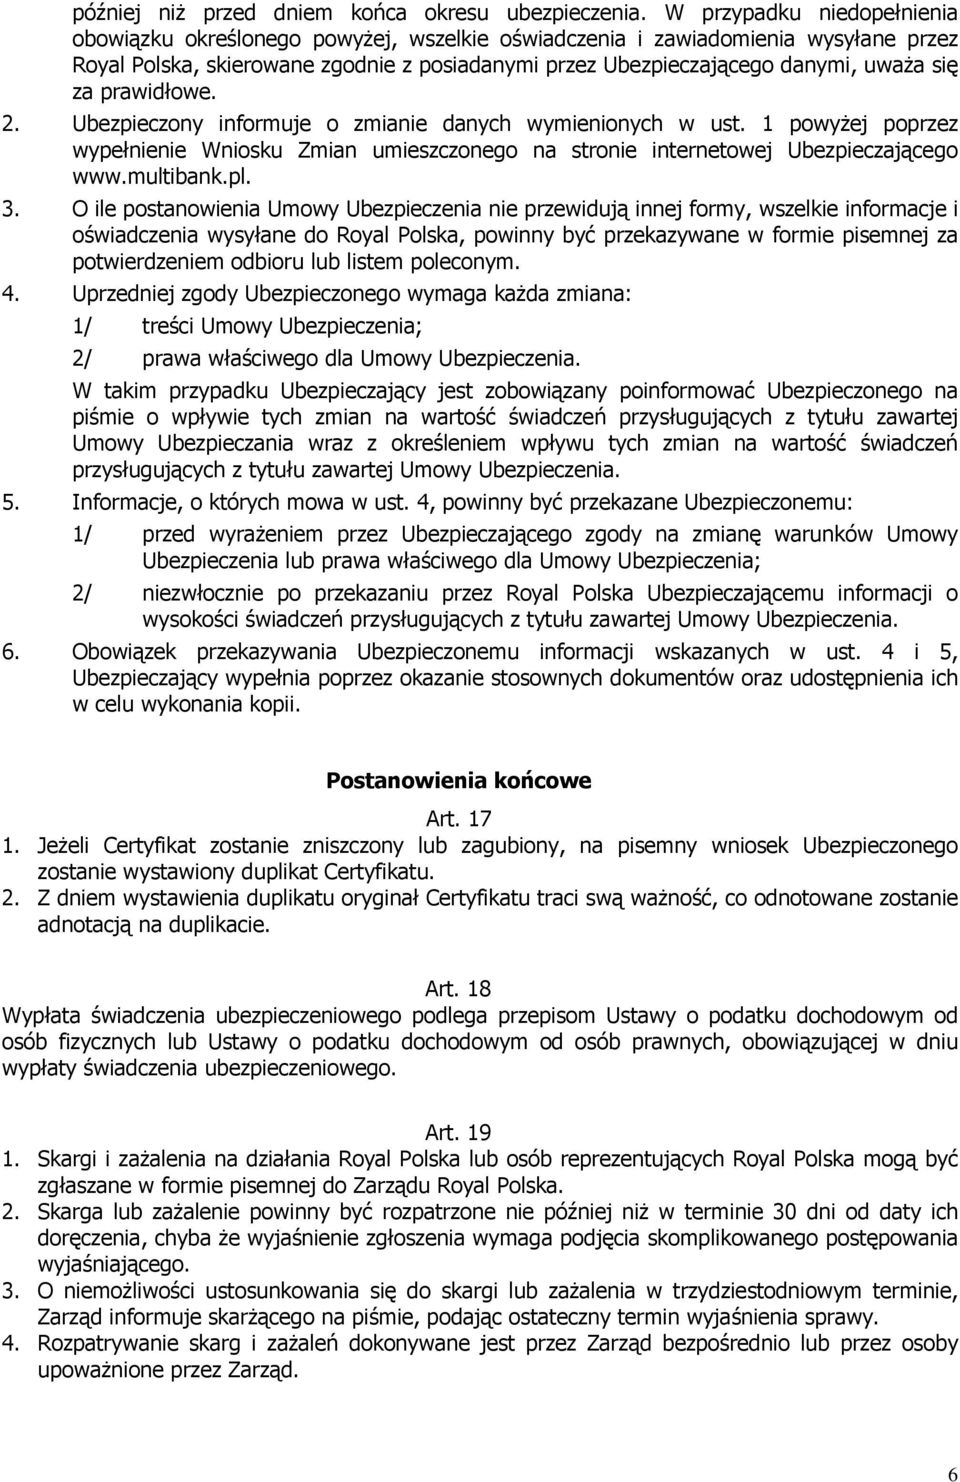 za prawidłowe. 2. Ubezpieczony informuje o zmianie danych wymienionych w ust. 1 powyżej poprzez wypełnienie Wniosku Zmian umieszczonego na stronie internetowej Ubezpieczającego www.multibank.pl. 3.